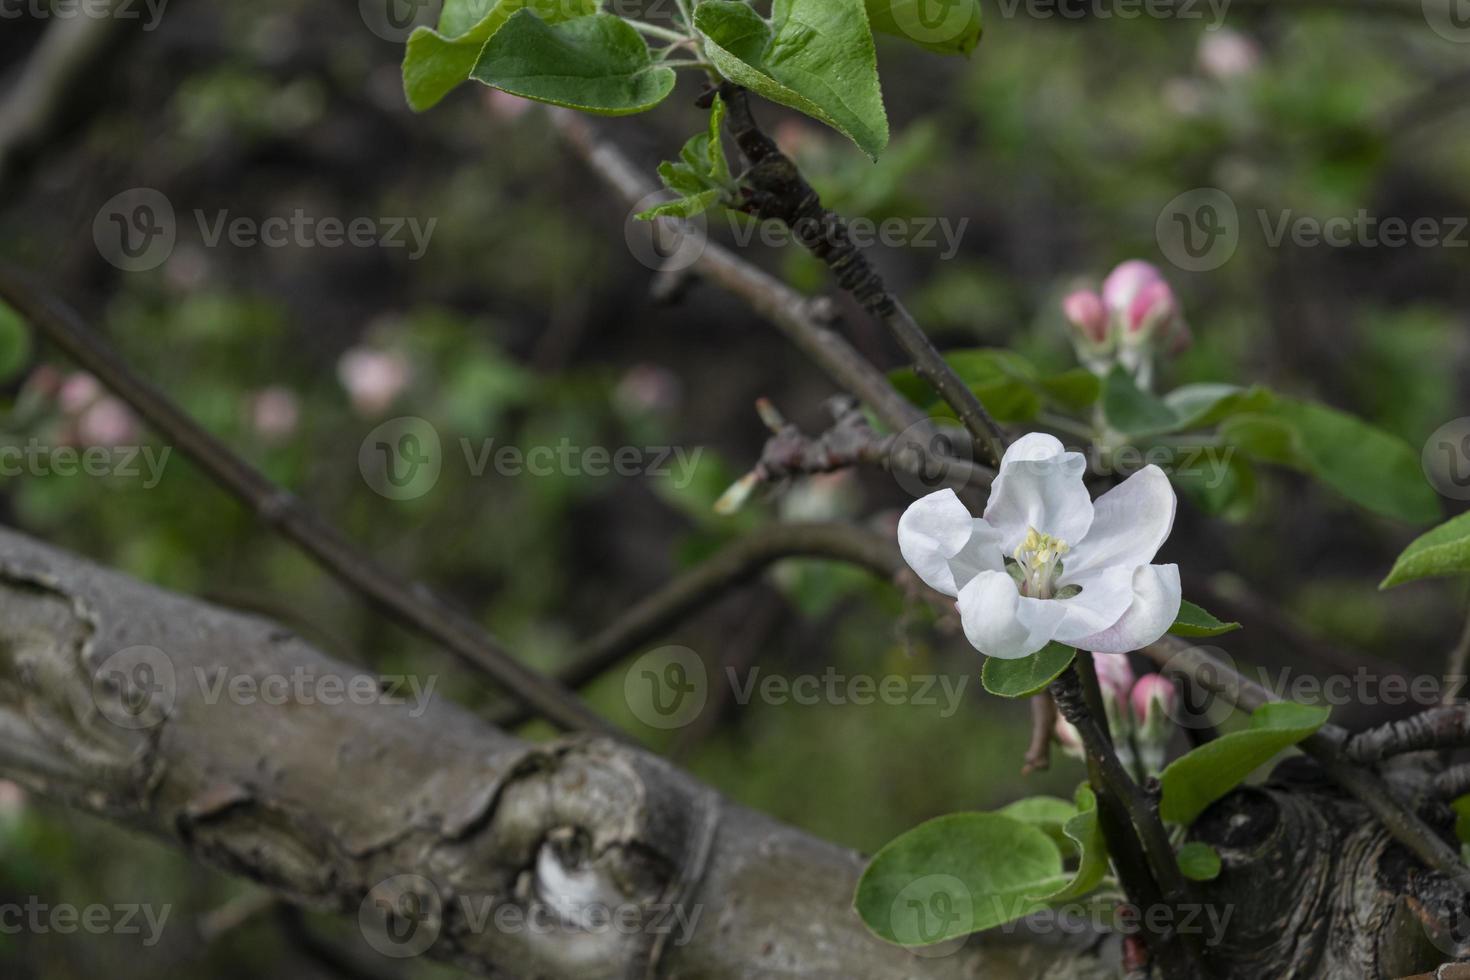 uma macieira florescendo em um fundo embaçado natural. foco seletivo. foto